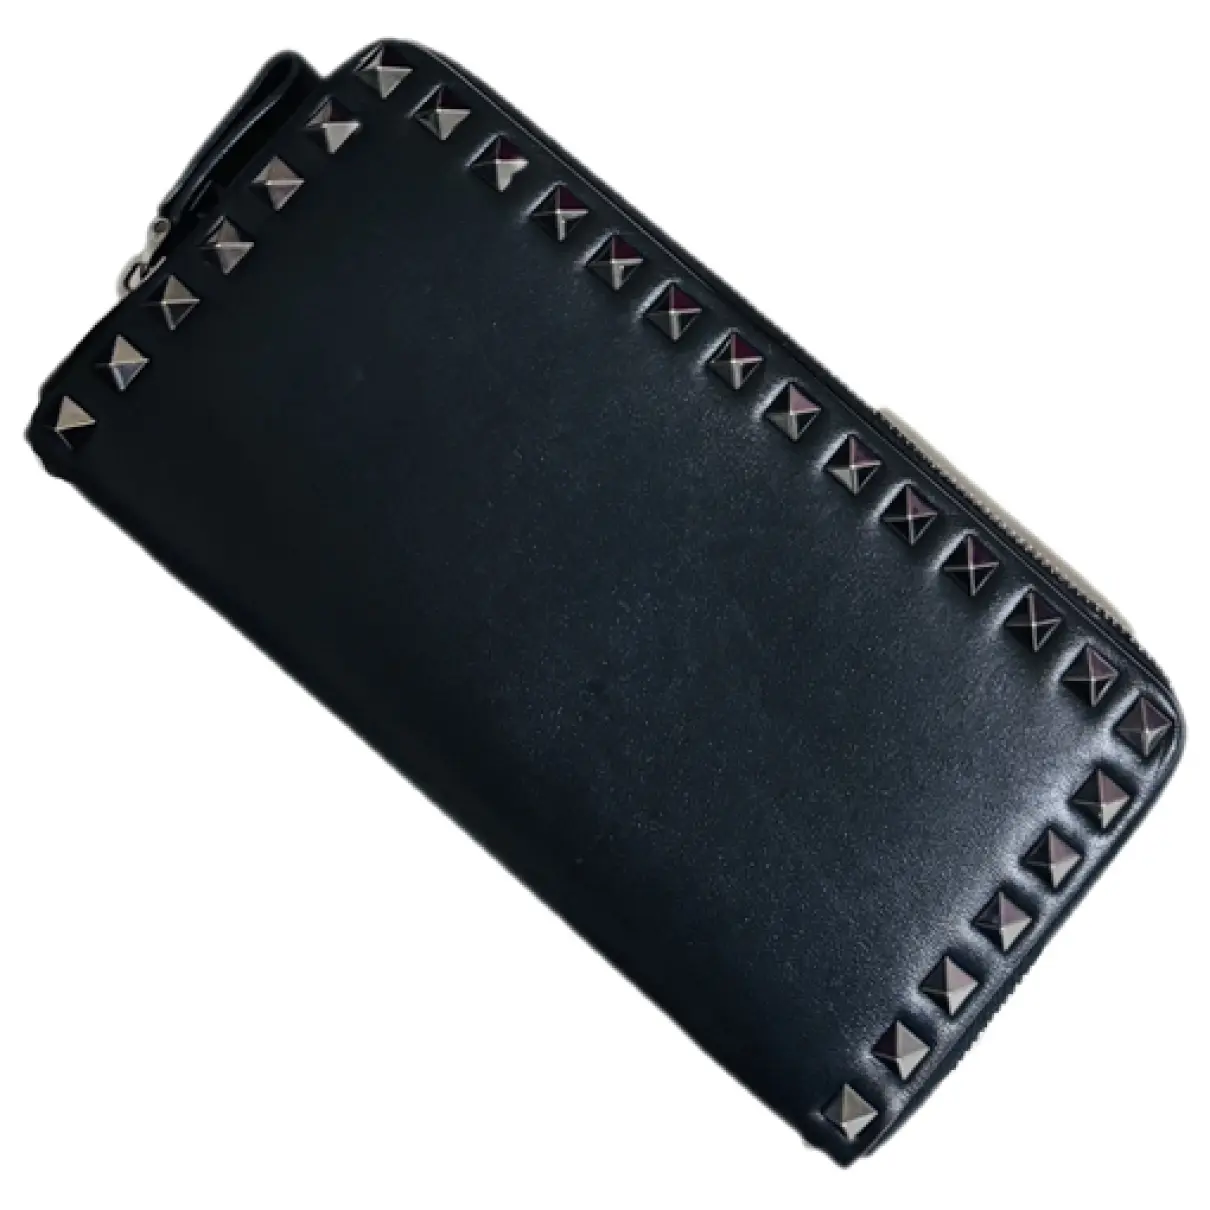 Rockstud leather wallet